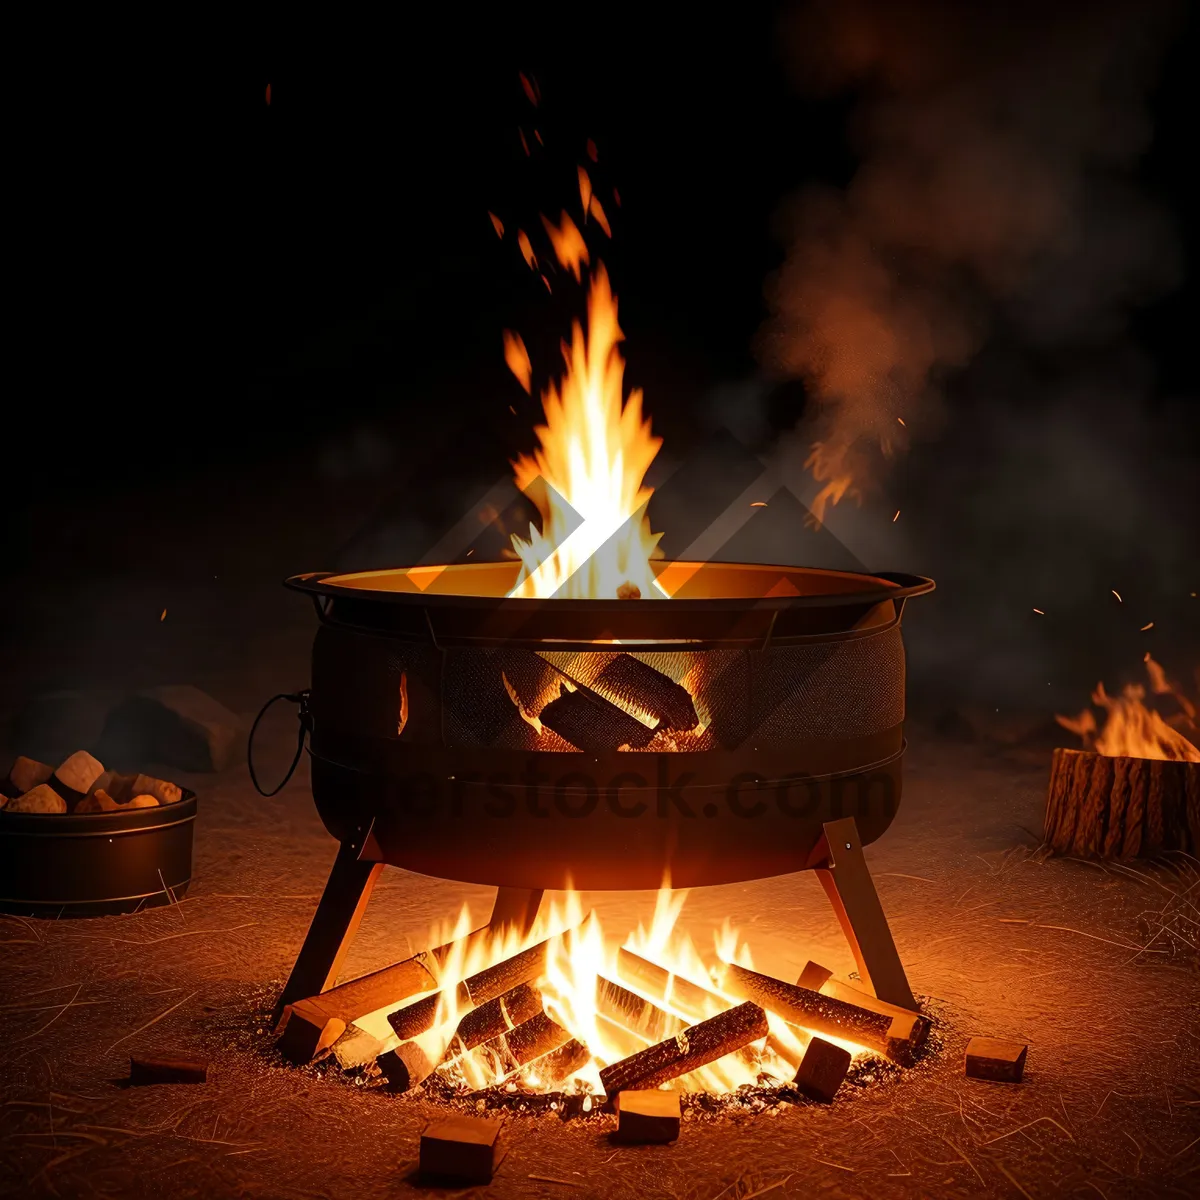 Picture of Fierce Fire in Black Pot - Fiery Blaze